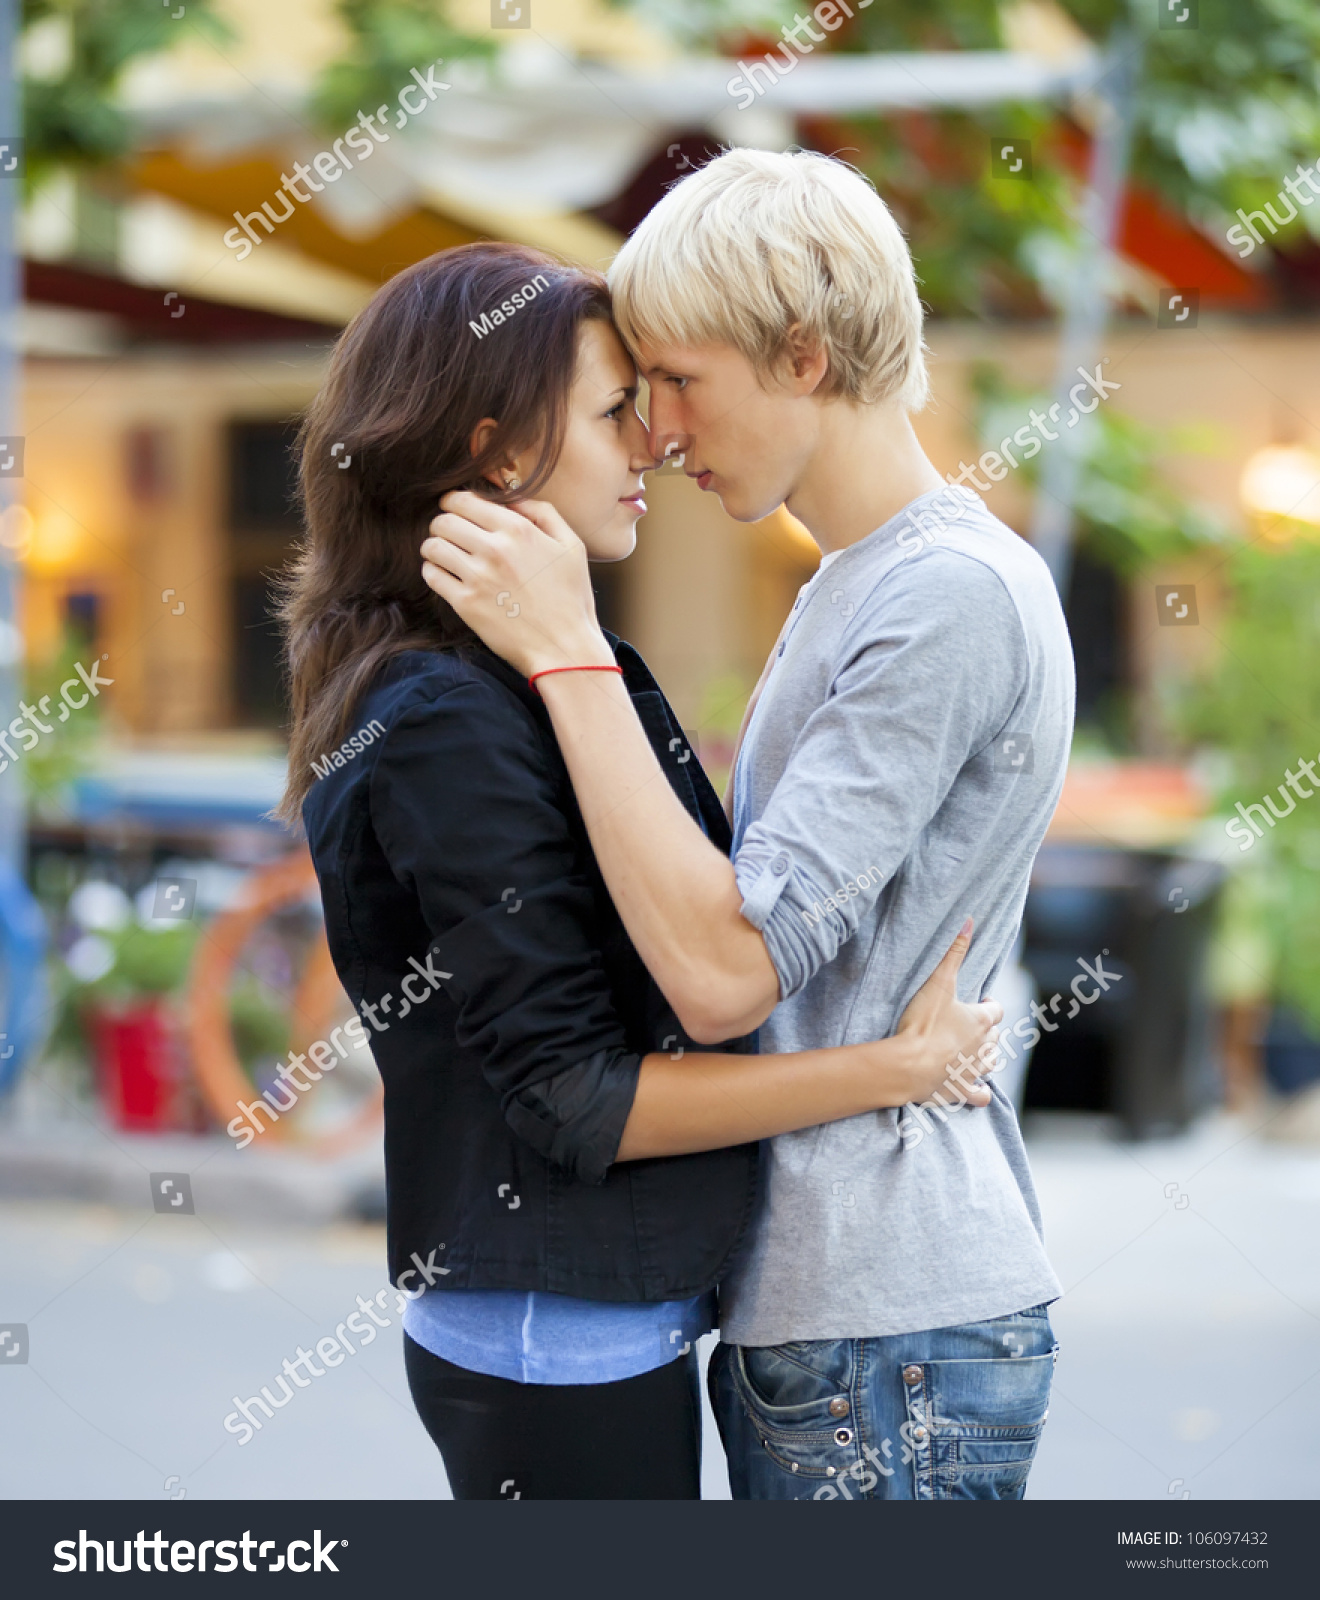 Woman teen couple